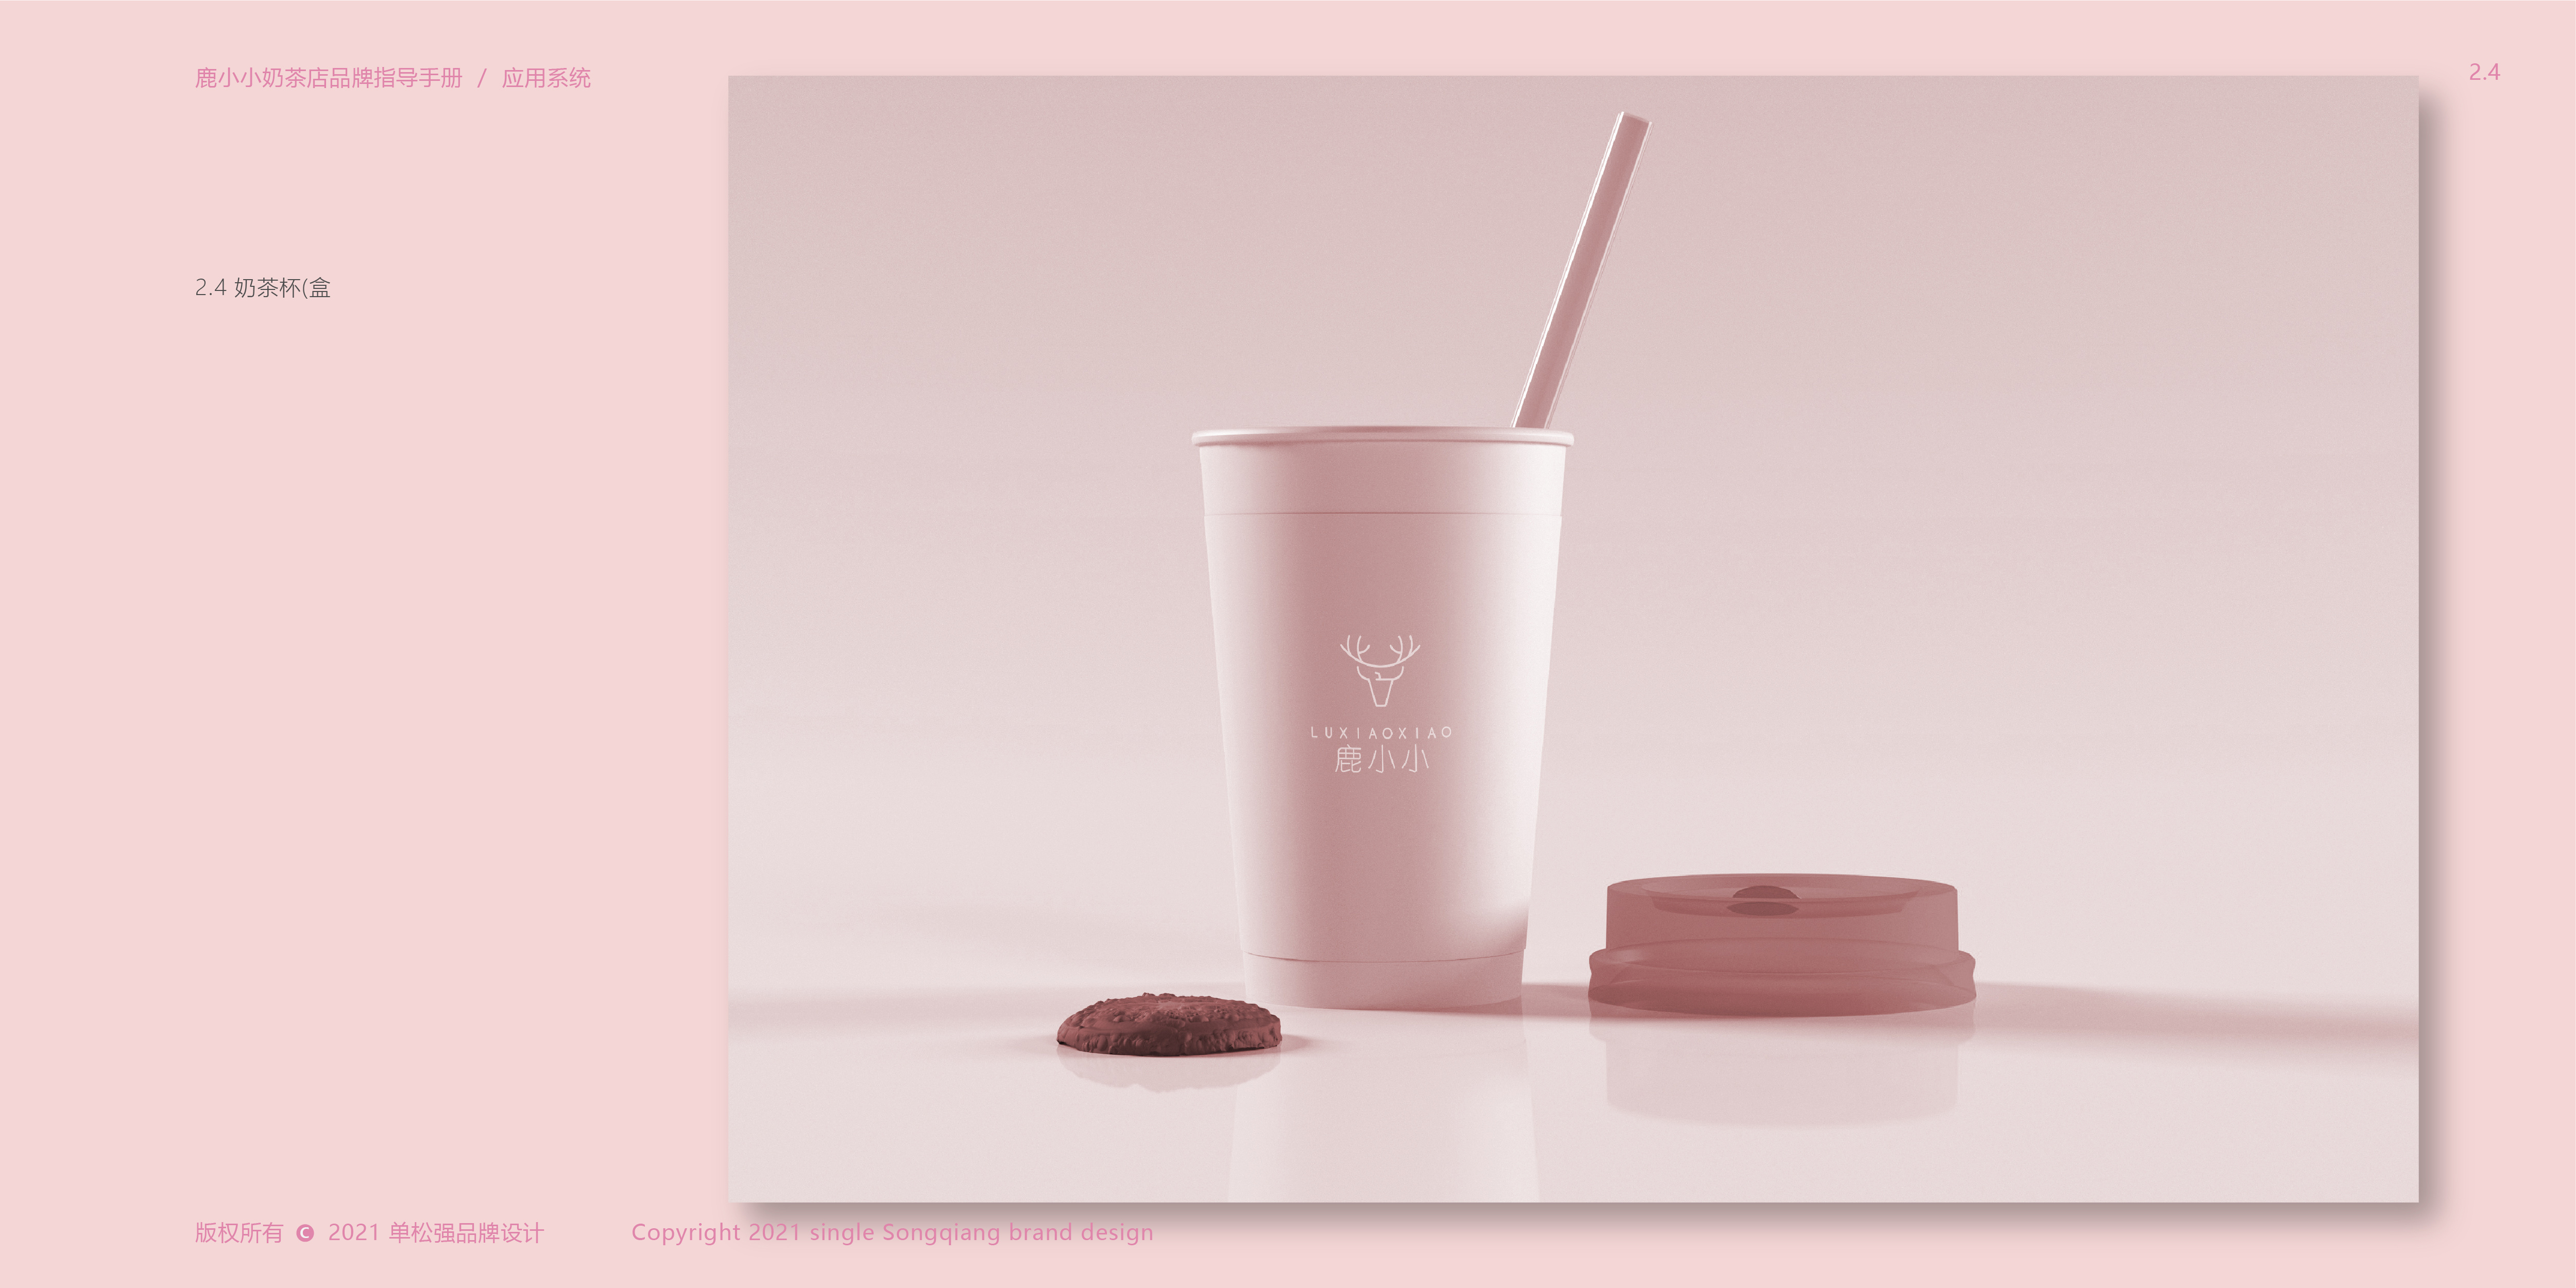 【VI设计】 & 鹿小小奶茶品牌设计